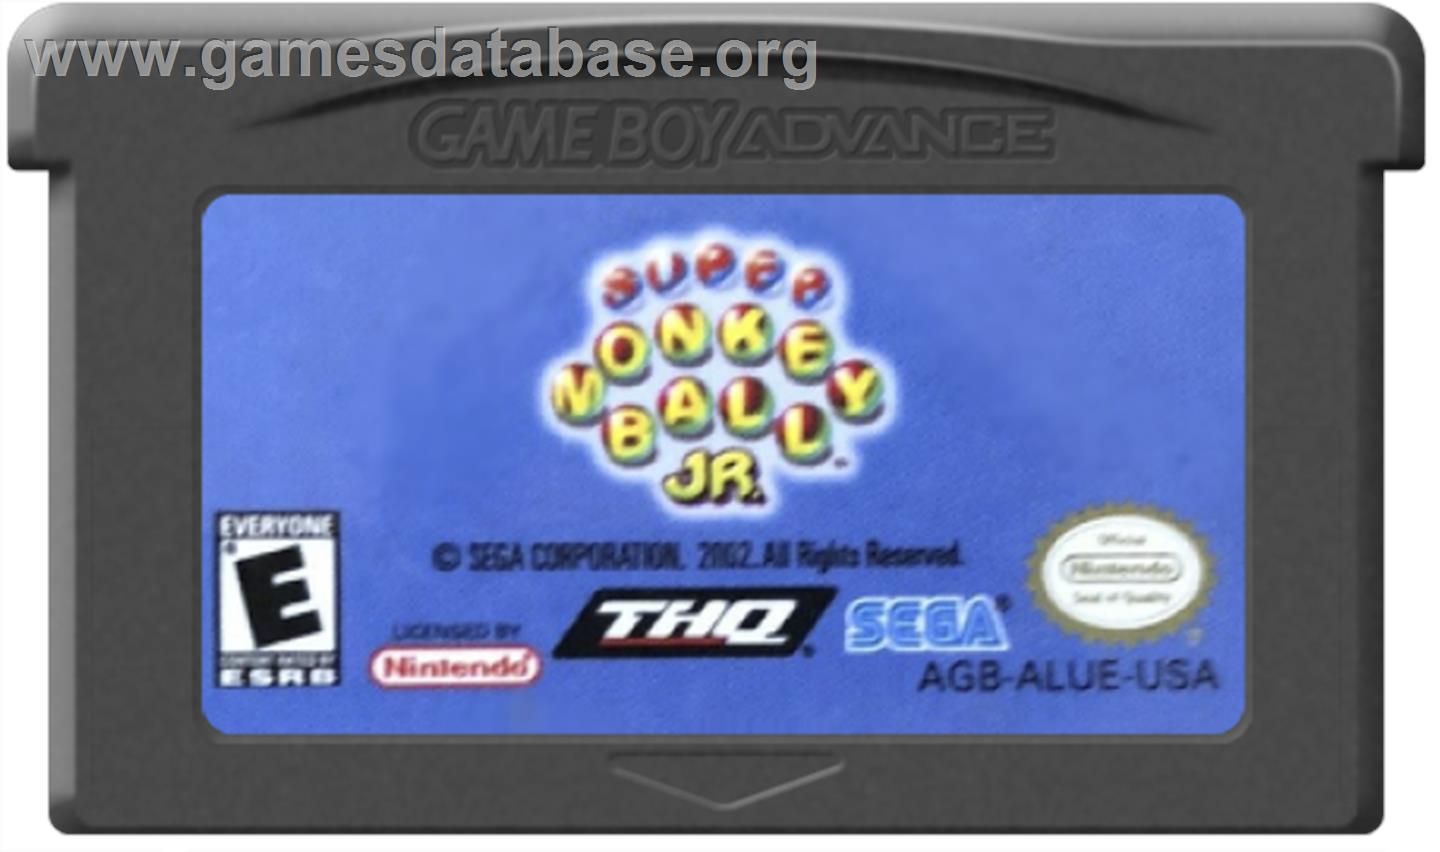 Super Monkey Ball Jr. - Nintendo Game Boy Advance - Artwork - Cartridge